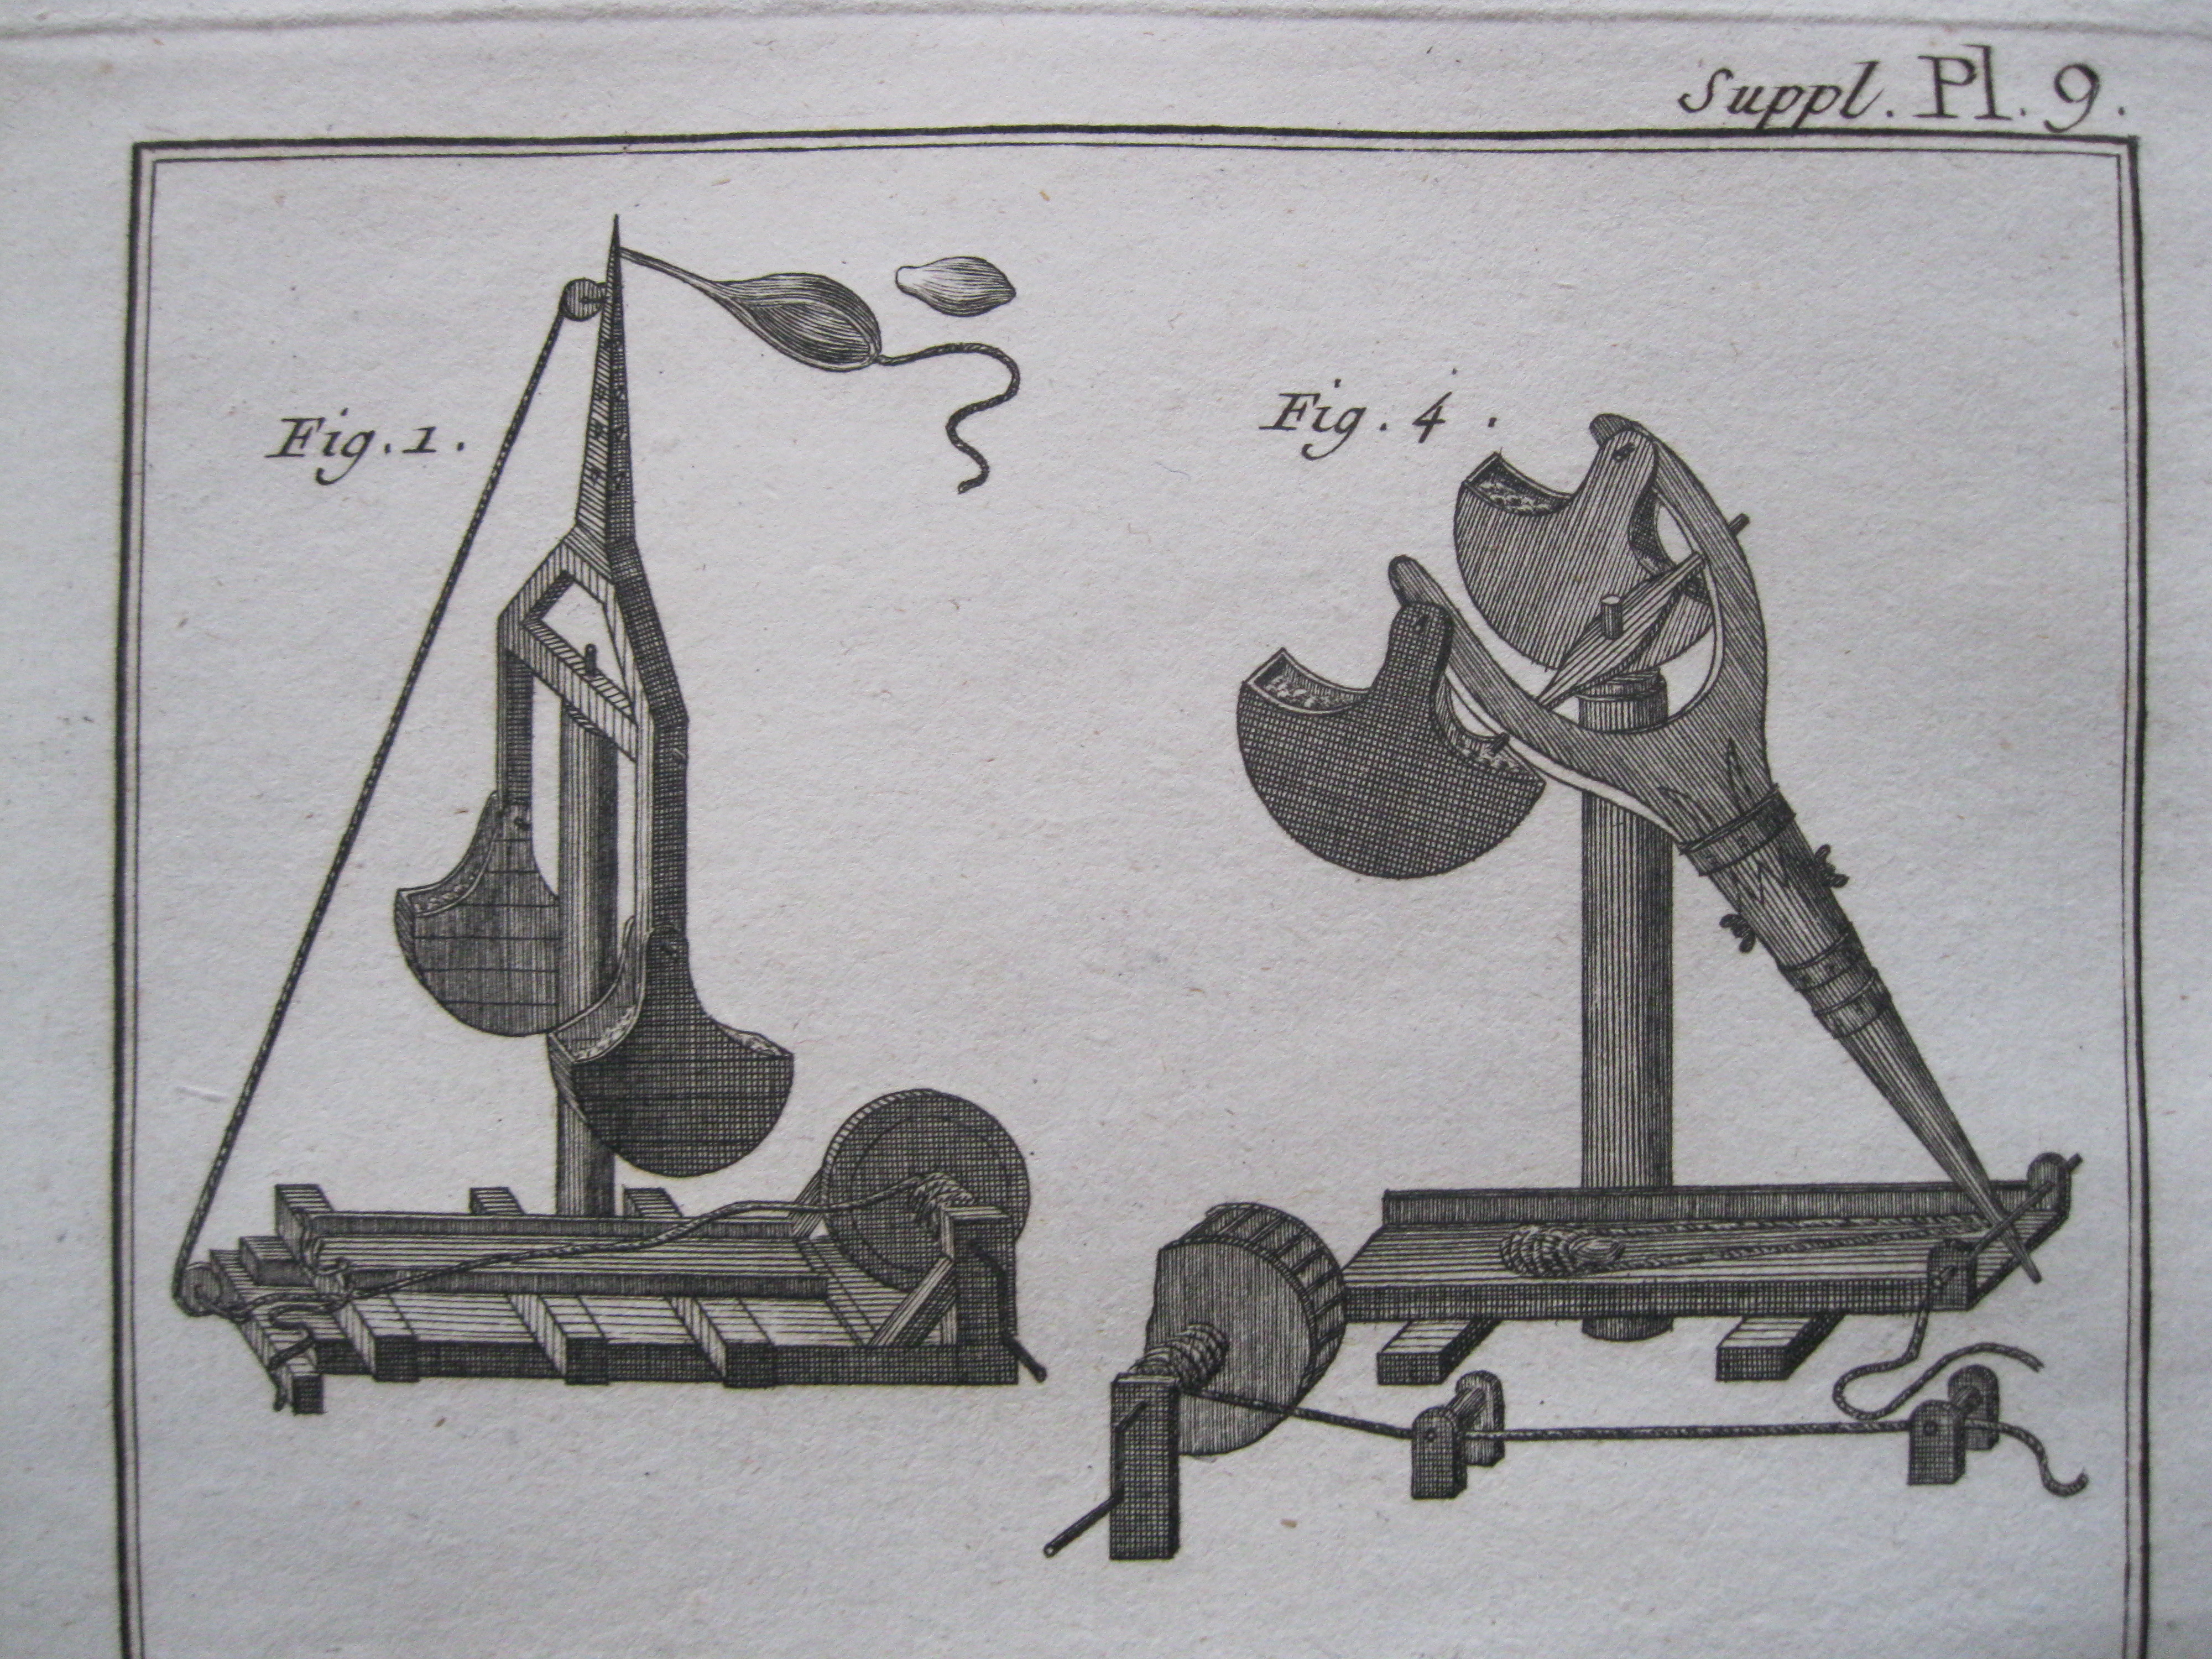 Arte militar XI.Armas y máquinas de guerra.Diderot et D'Alembert, 1779